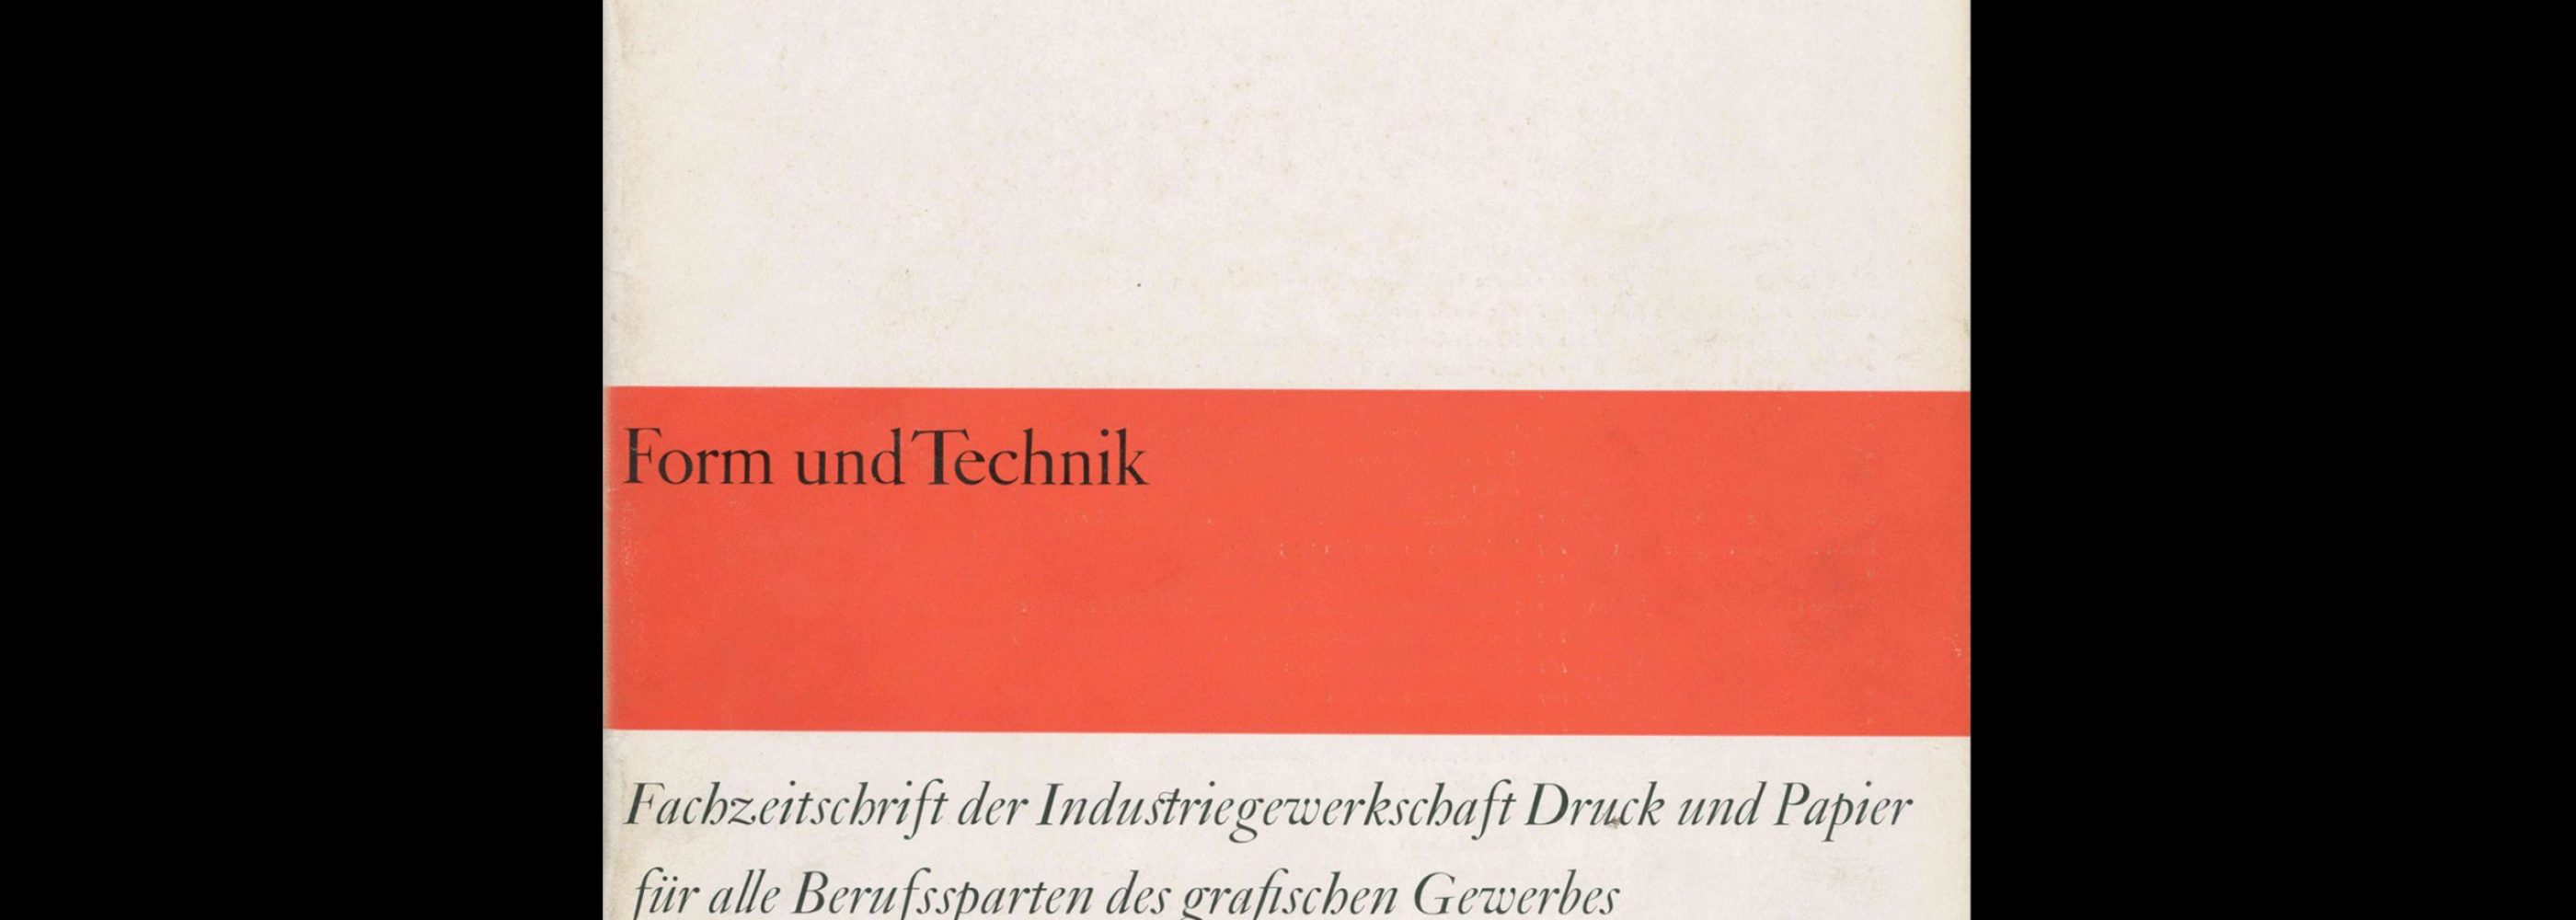 Form und Technik, 3, 1964